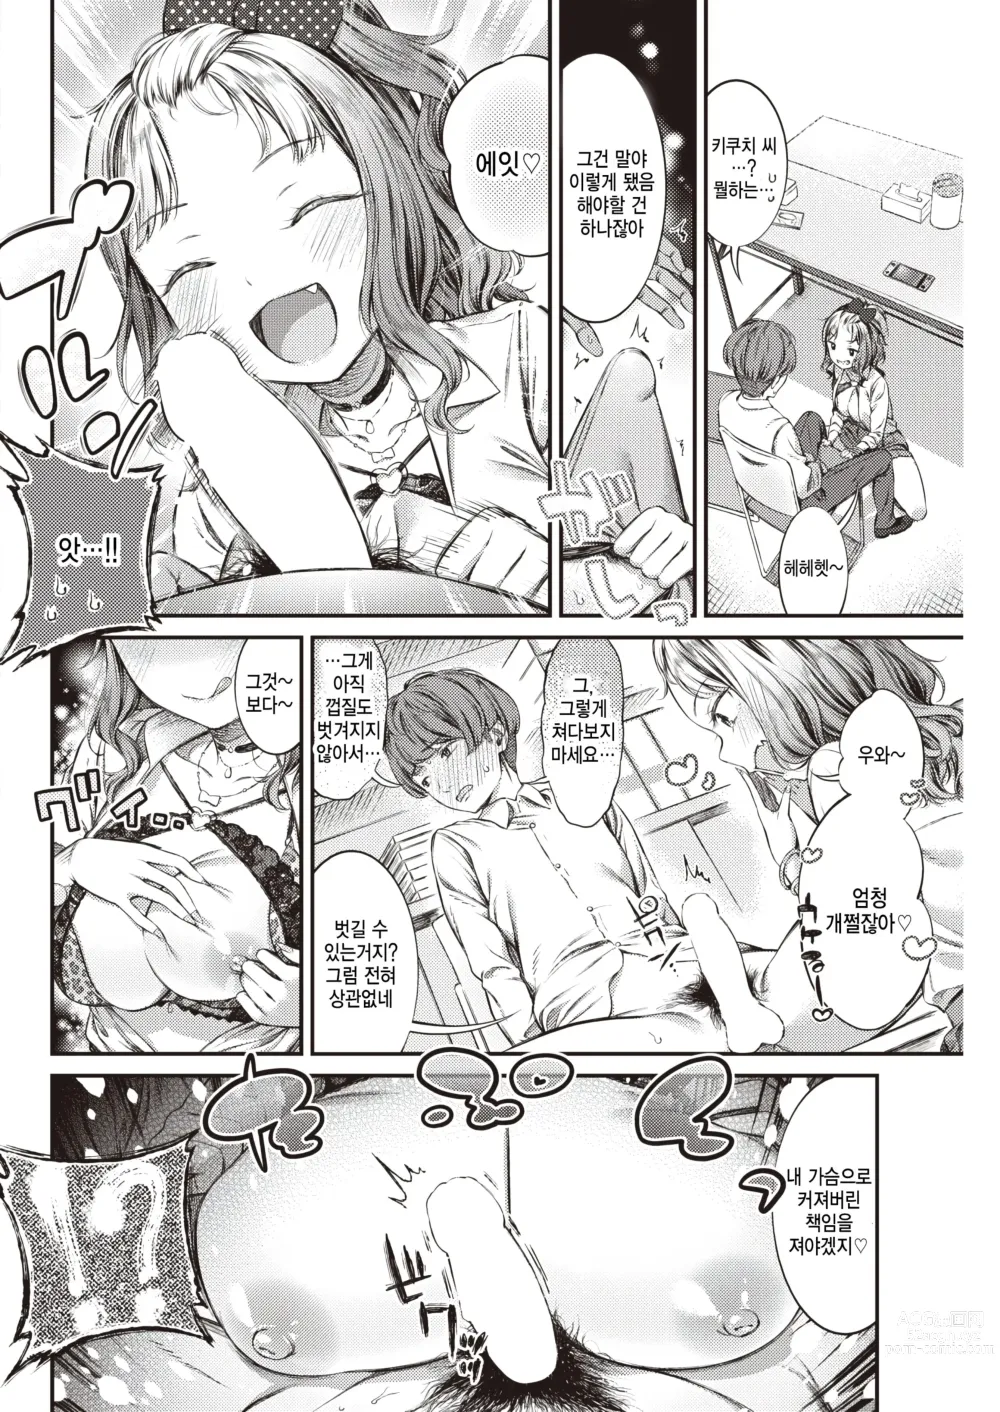 Page 8 of manga Lemon Pie